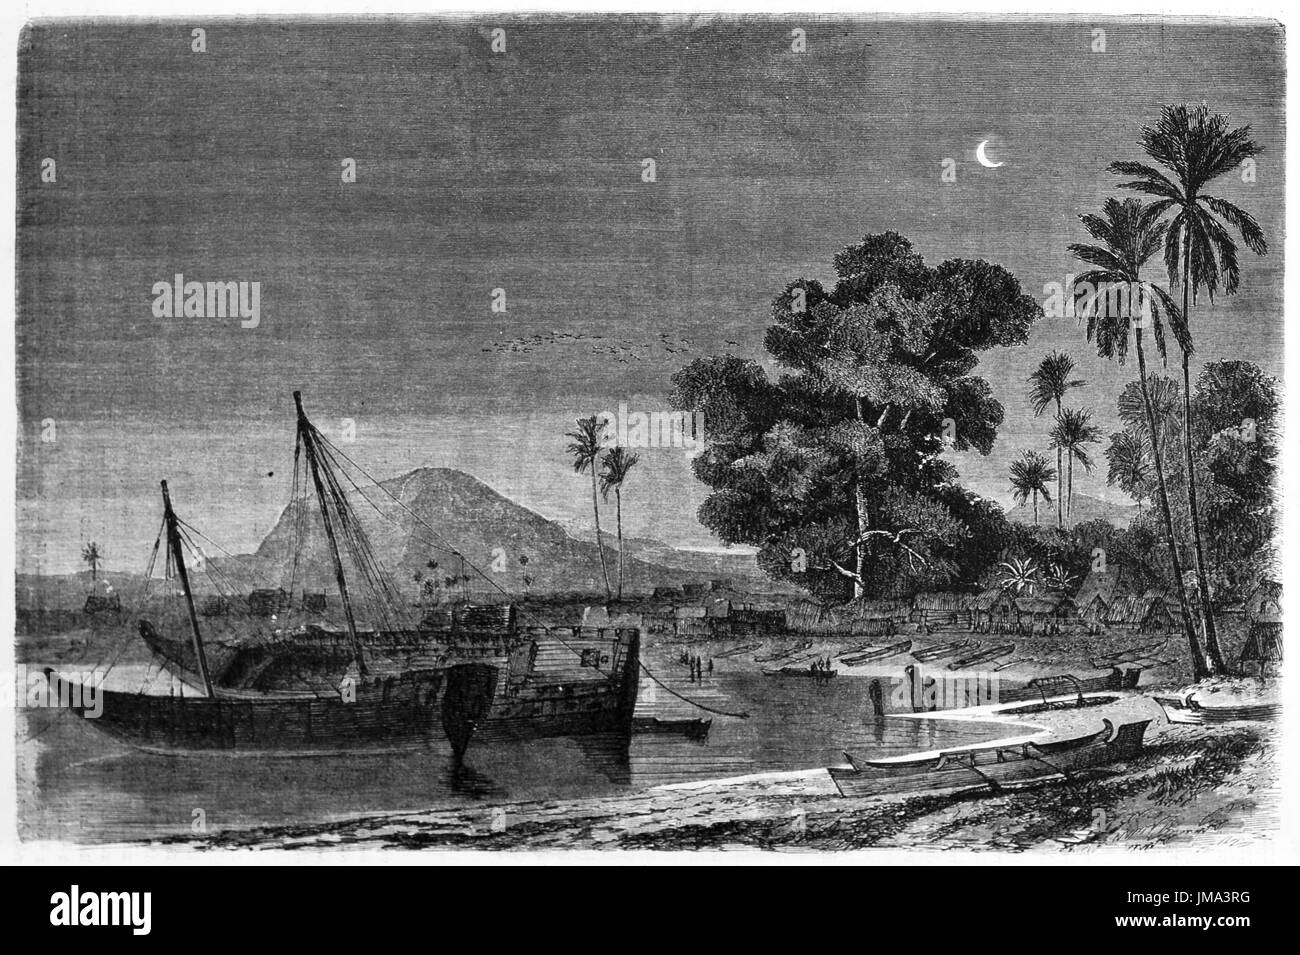 In der Nacht dockten madagassische Daus in einer ruhigen Bucht auf Madagaskar an (Dhow ist ein typisches Boot im Roten Meer und im Indischen Ozean). Kunst von Bérard, Tour du Monde,1861 Stockfoto